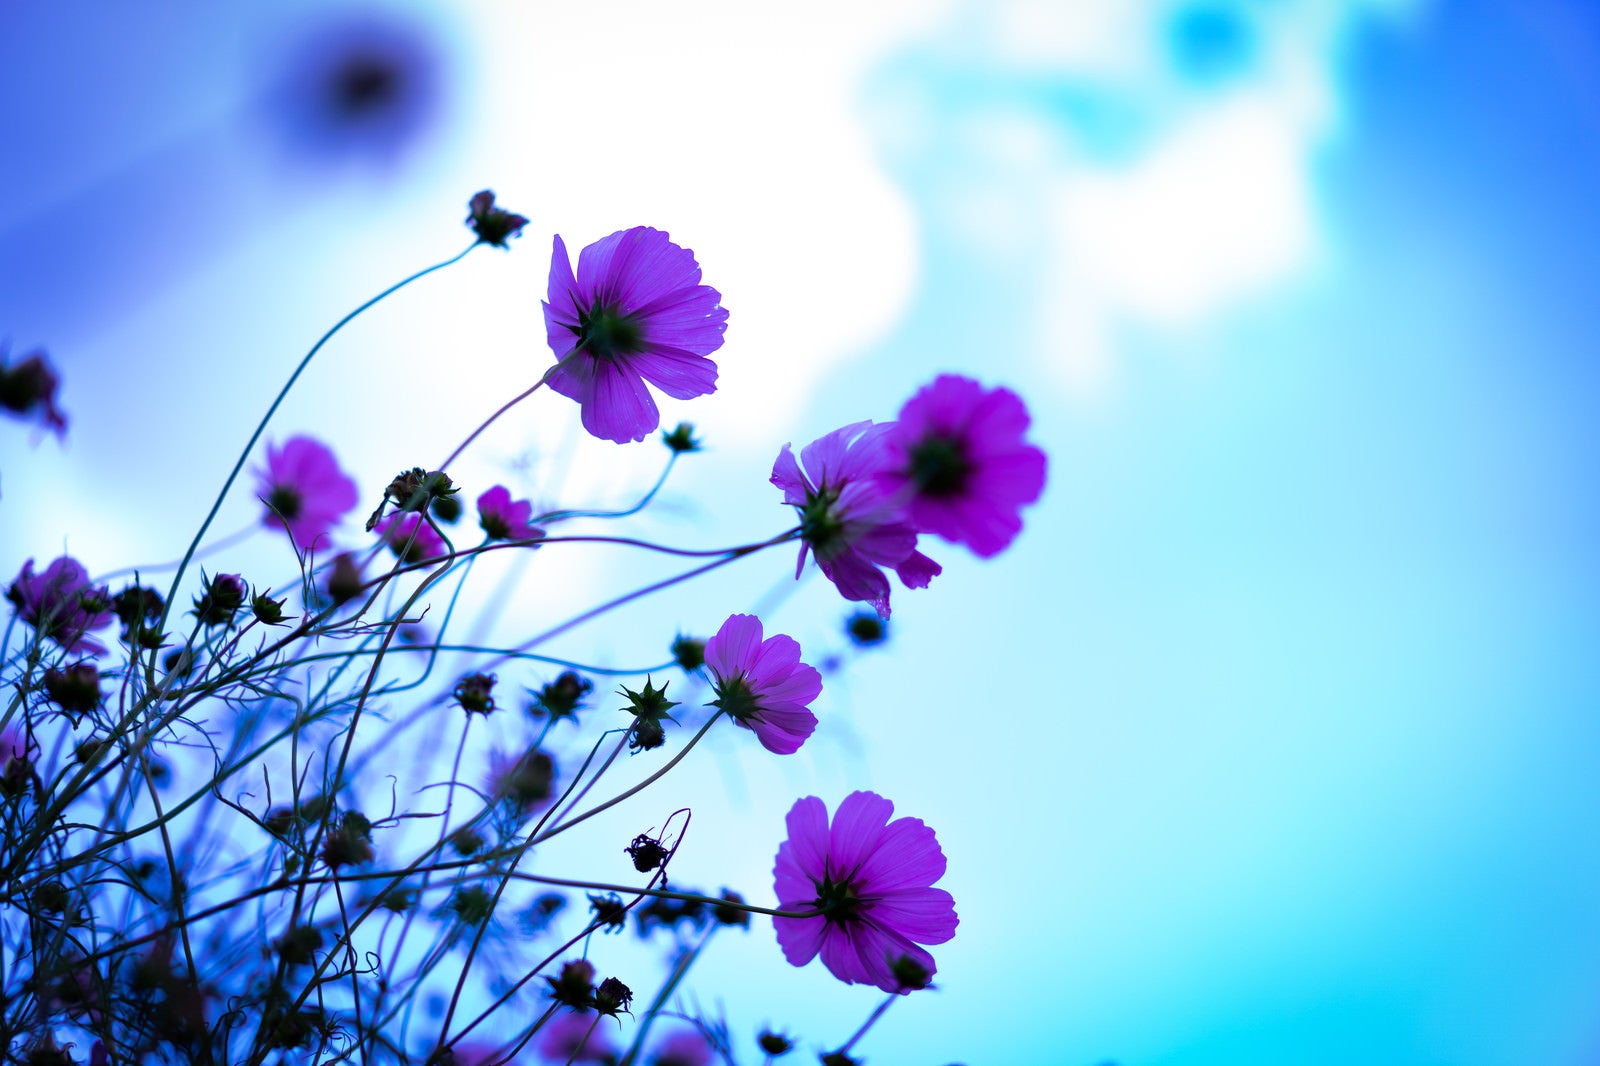 「青空が透けるコスモスの花弁」の写真